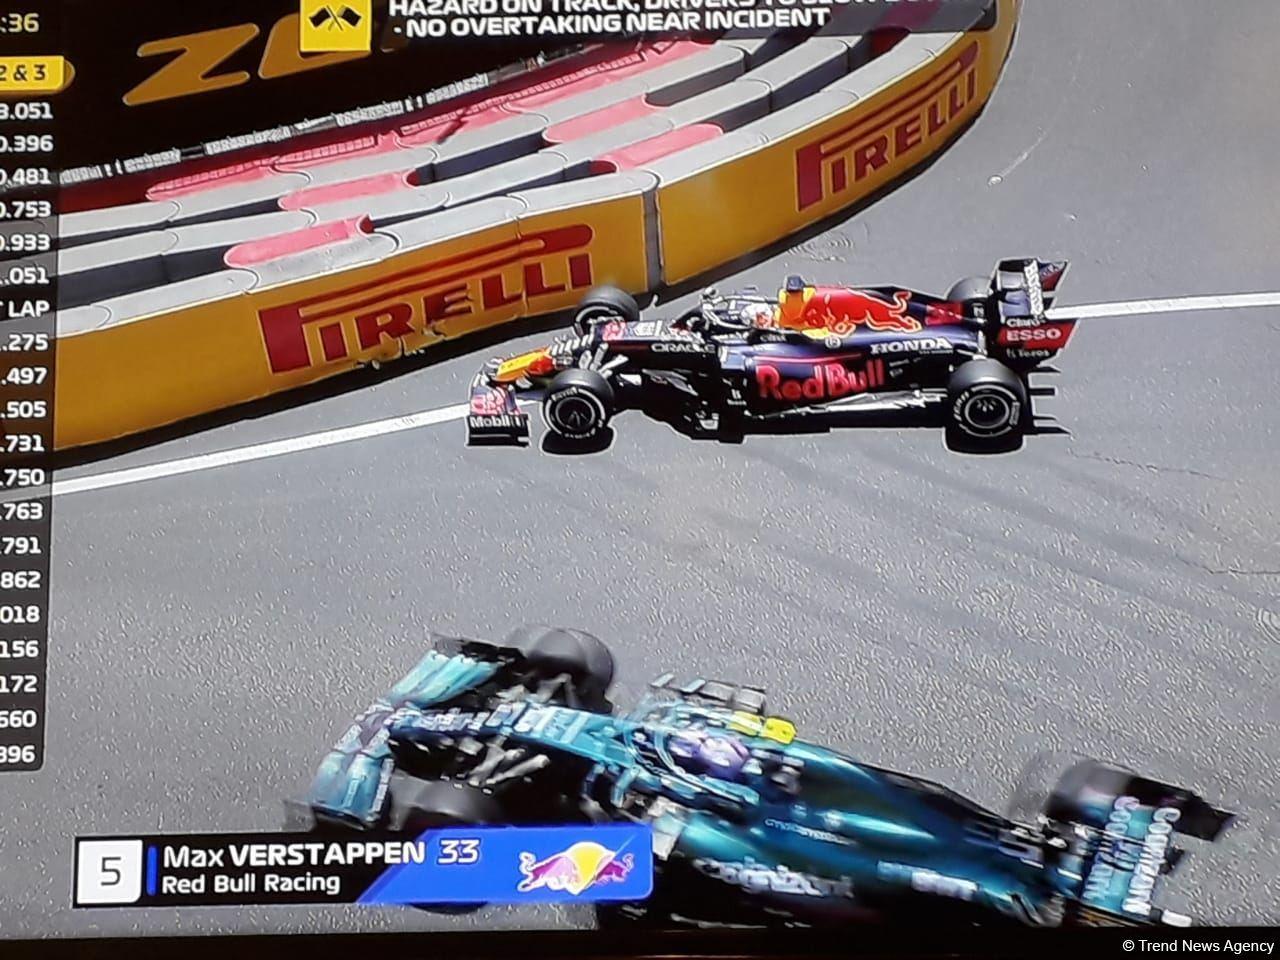 Red Bull Racing pilot crashes at F1 Azerbaijan Grand Prix in Baku